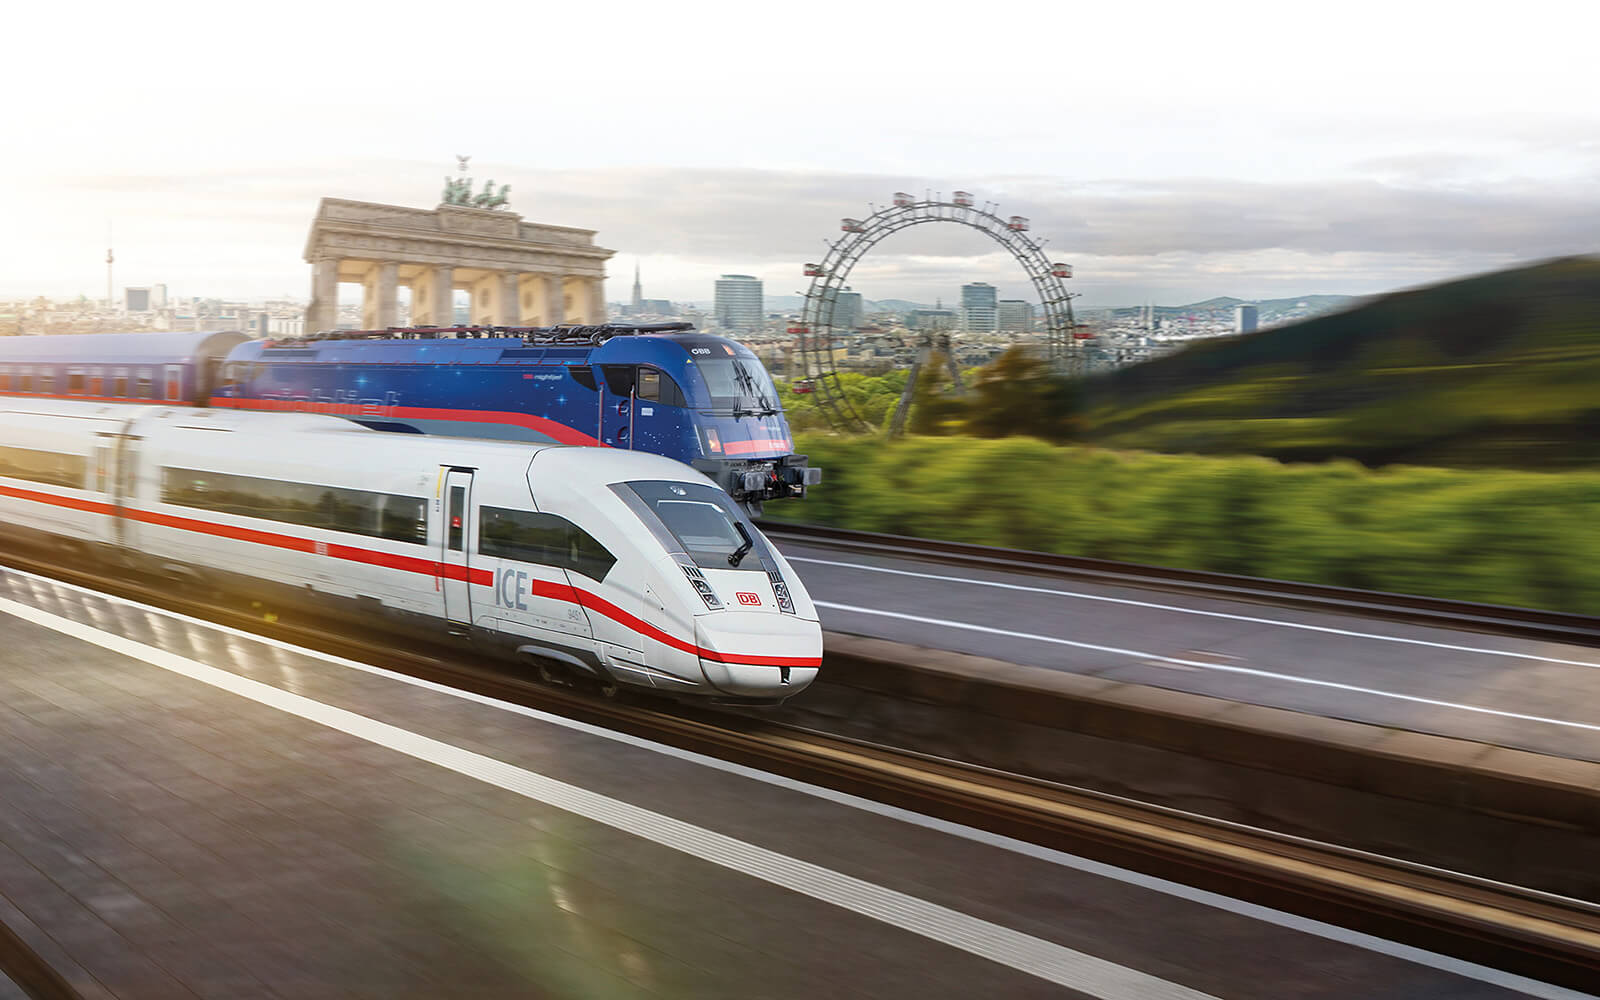 ドイツ鉄道およびオーストリア連邦鉄道、国際列車需要の高まりを受けて「ナイトジェット」などのサービス拡大